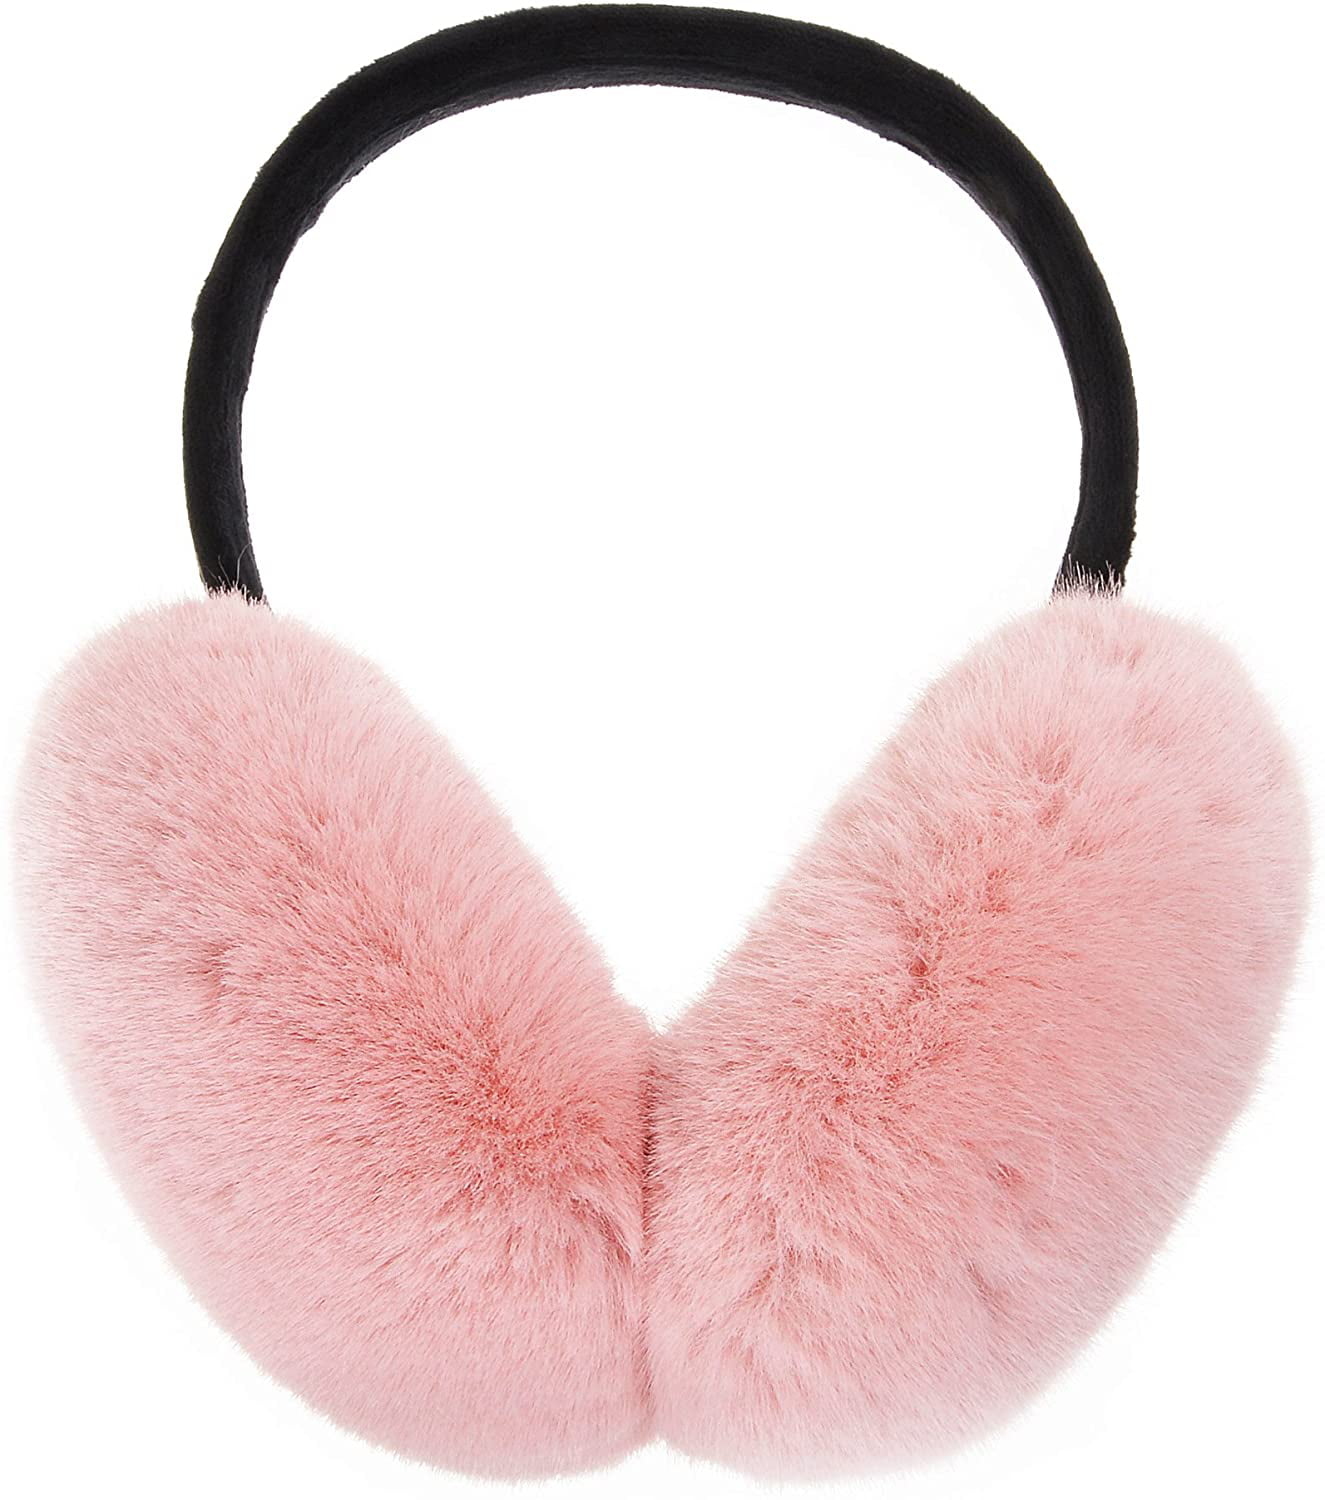 Earmuffs Ear Warmers For Women Winter Fur Foldable Ear Warmer 